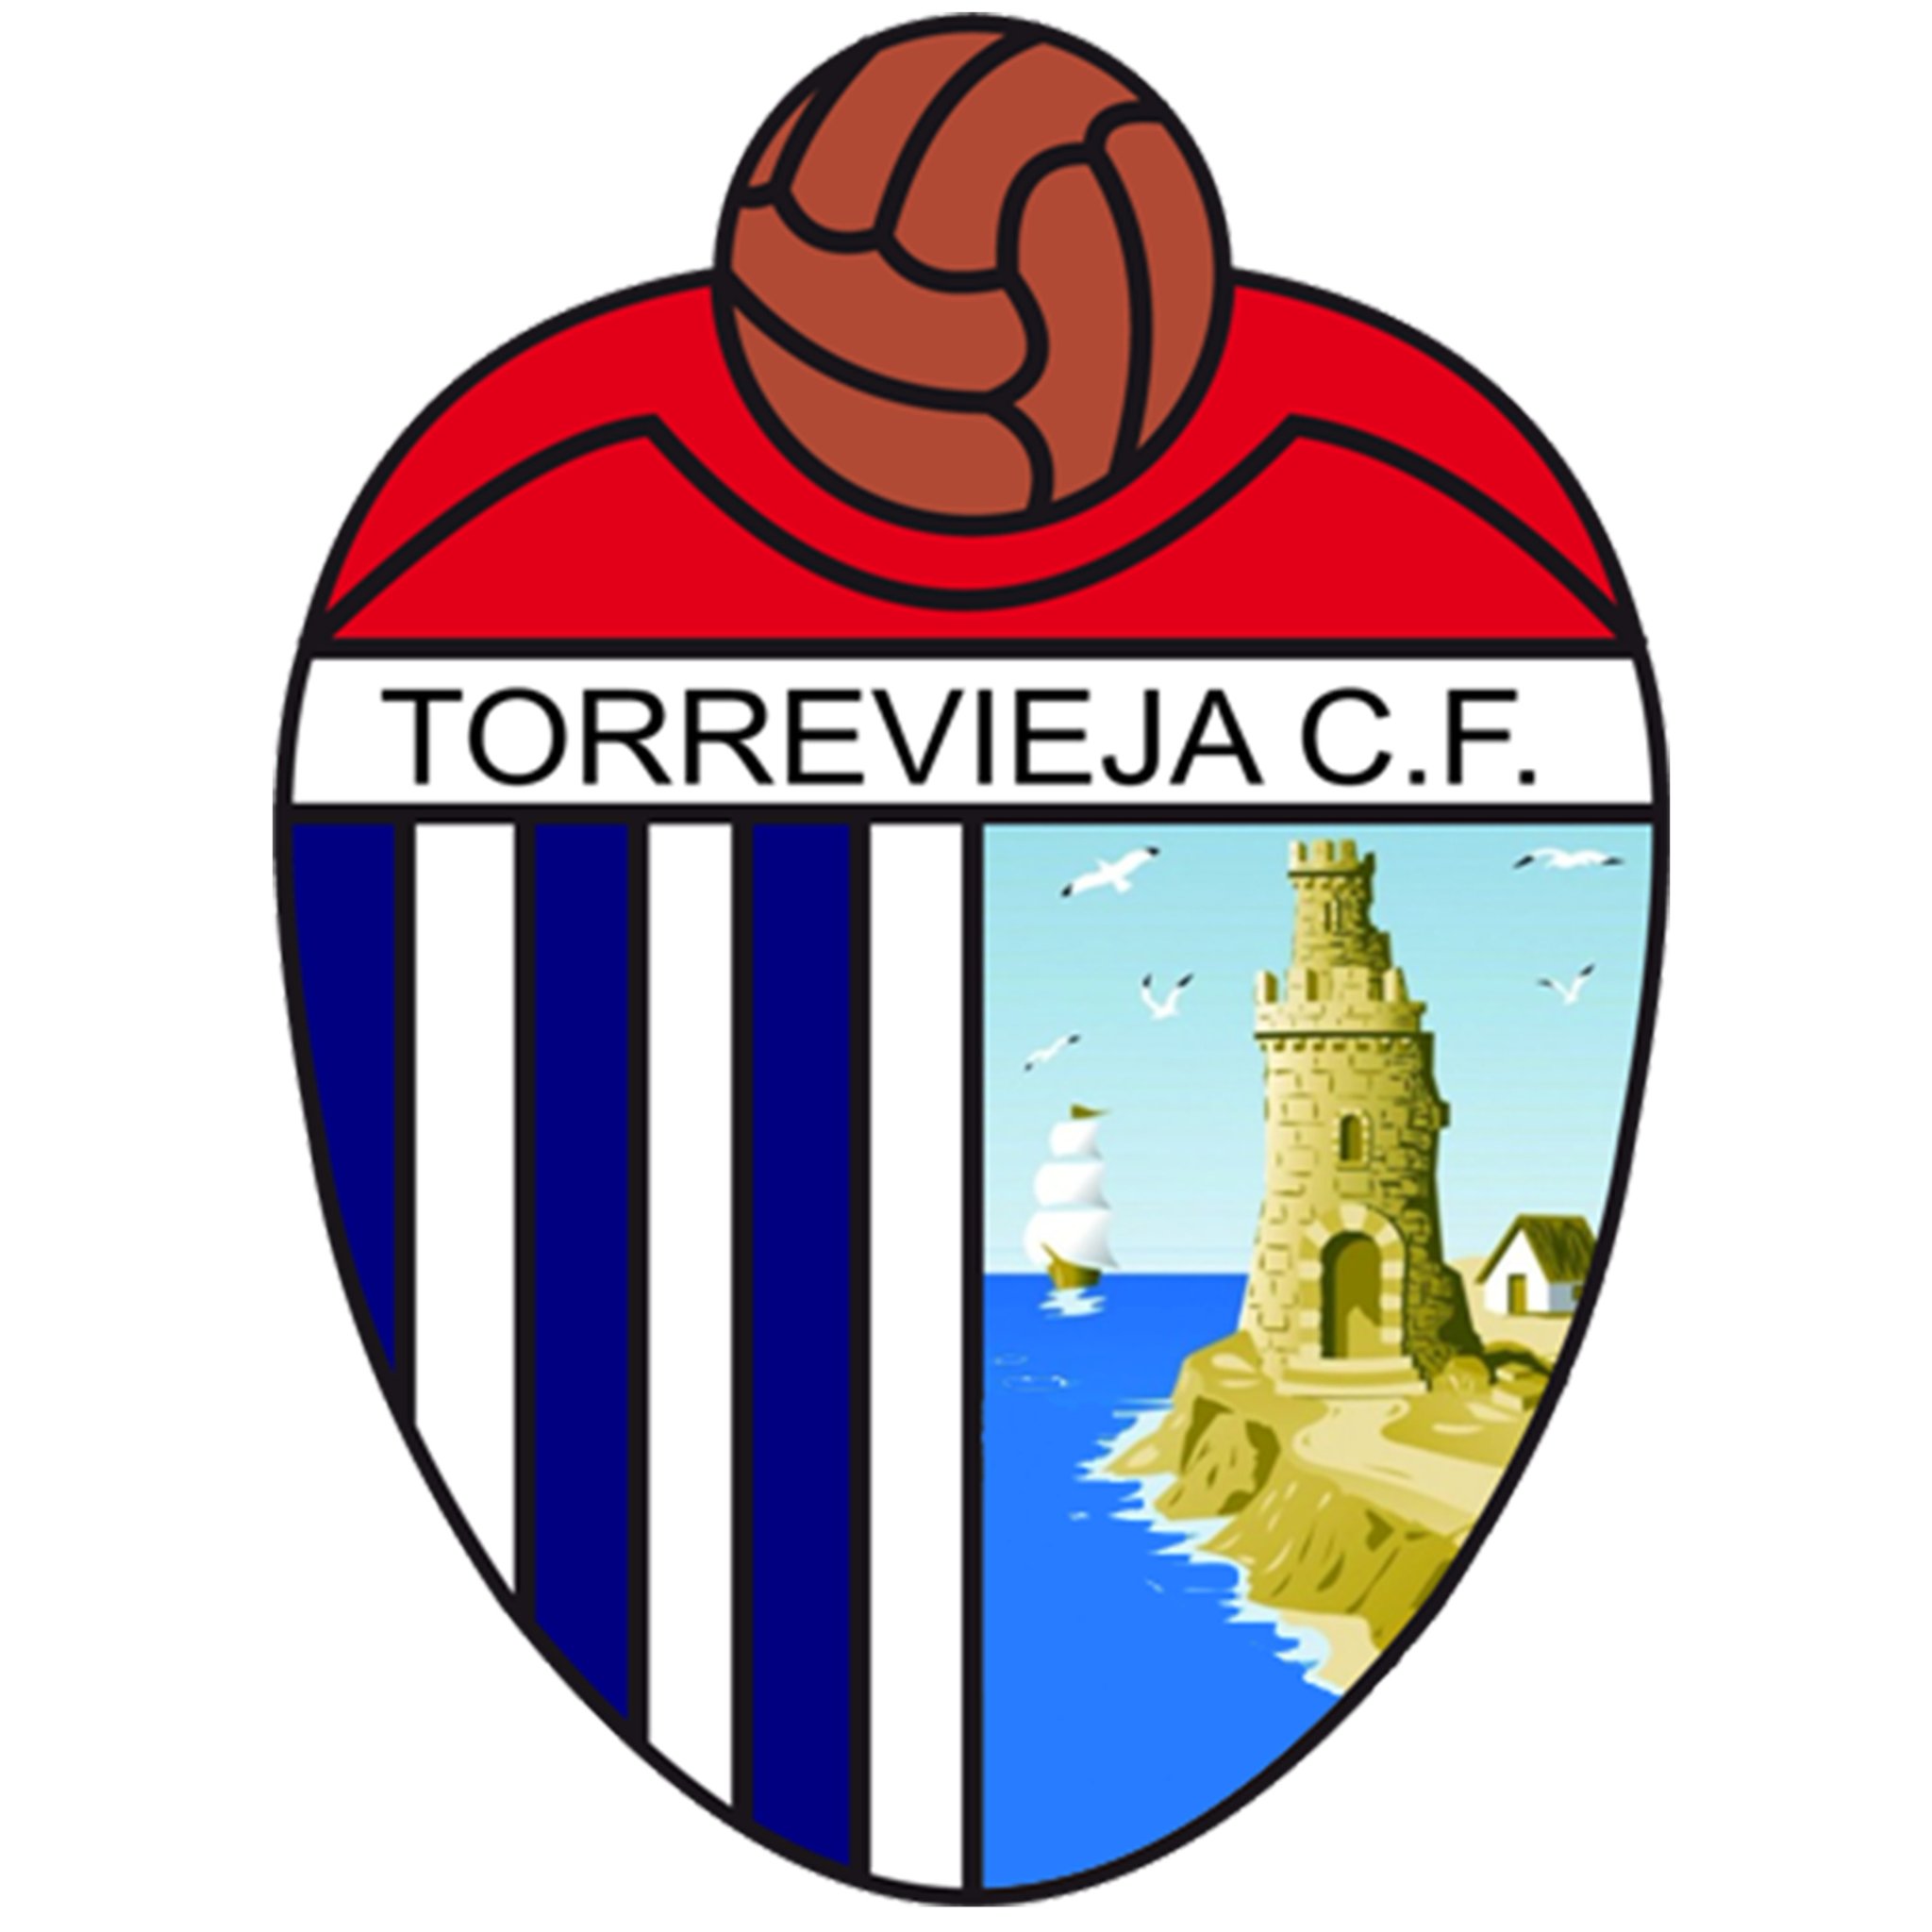 Cuenta oficial del Torrevieja Club de Fútbol. Fundado en 1971